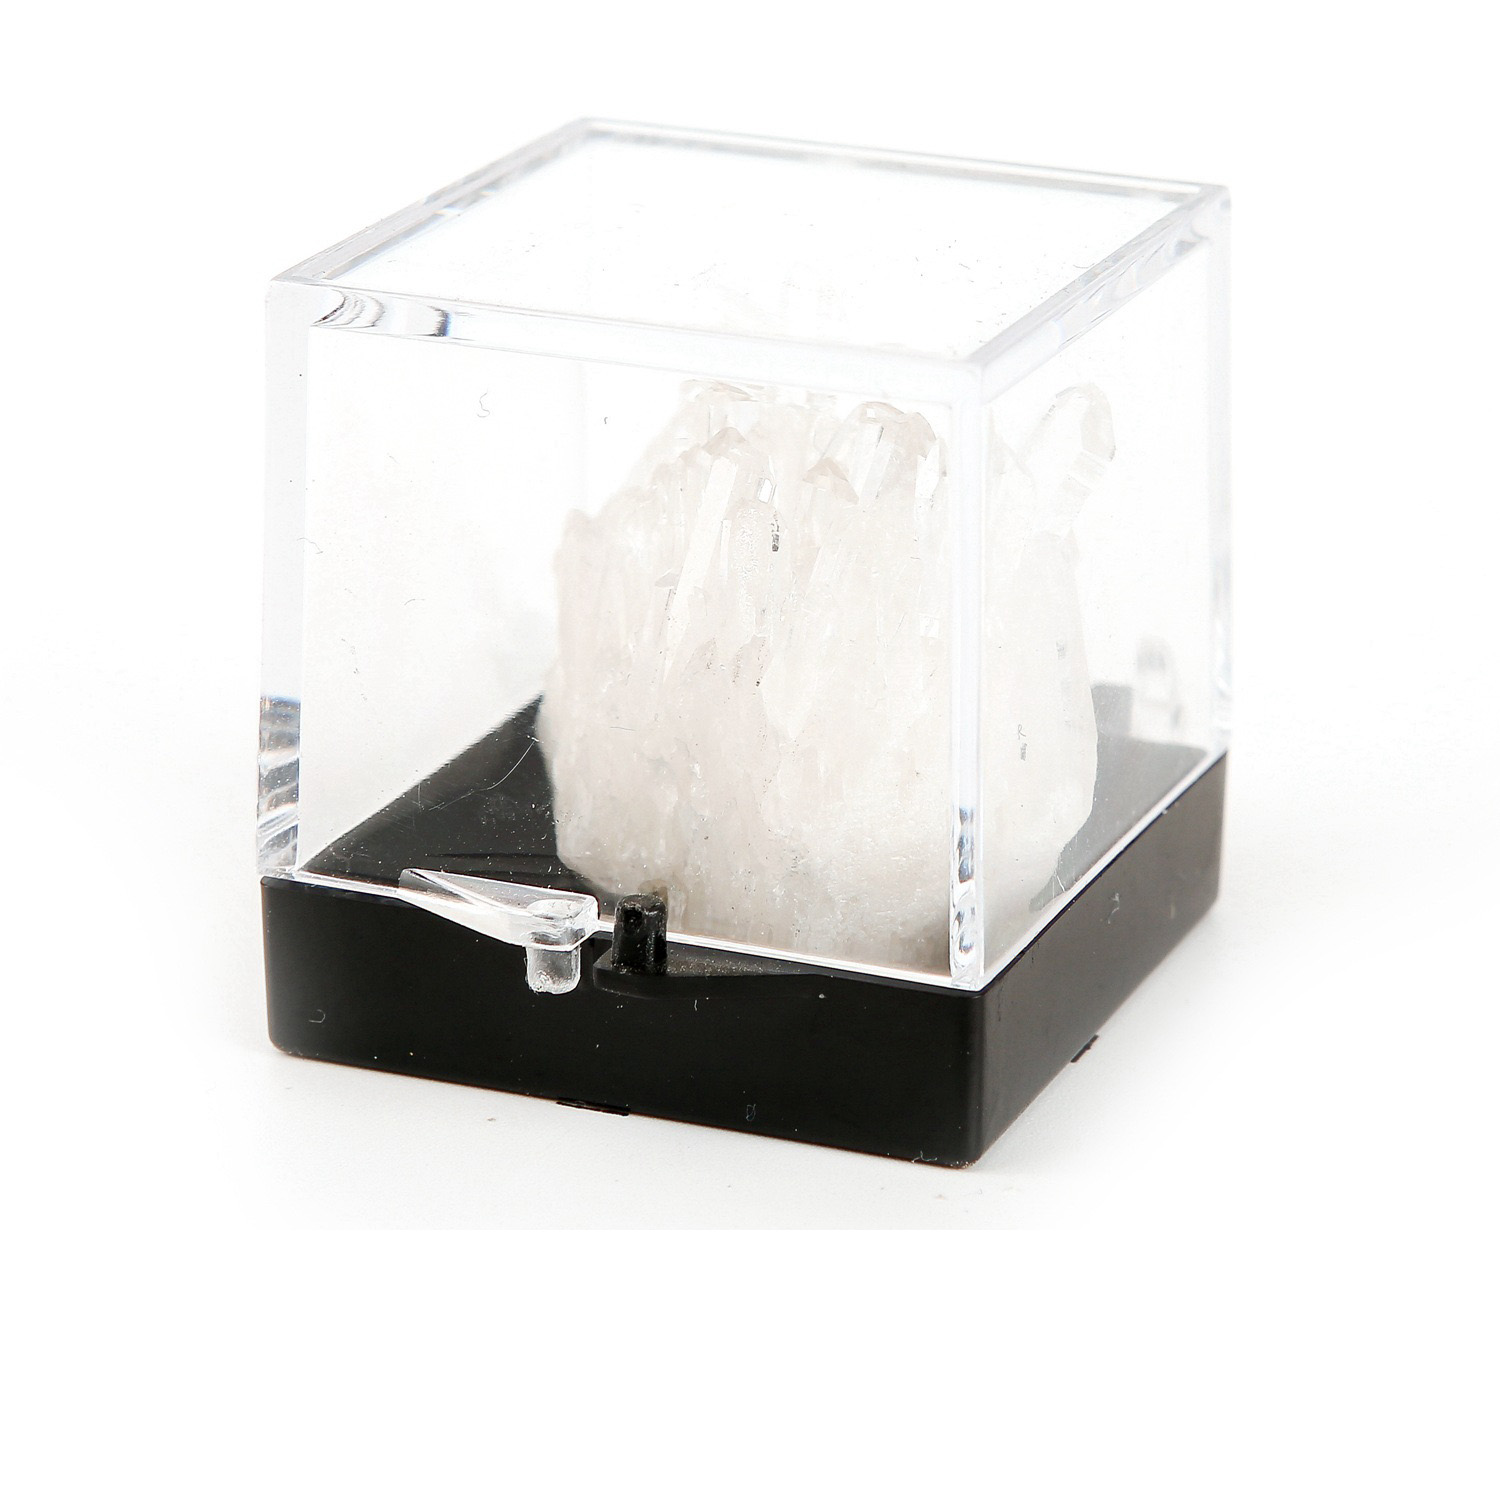 2:Bergkristal